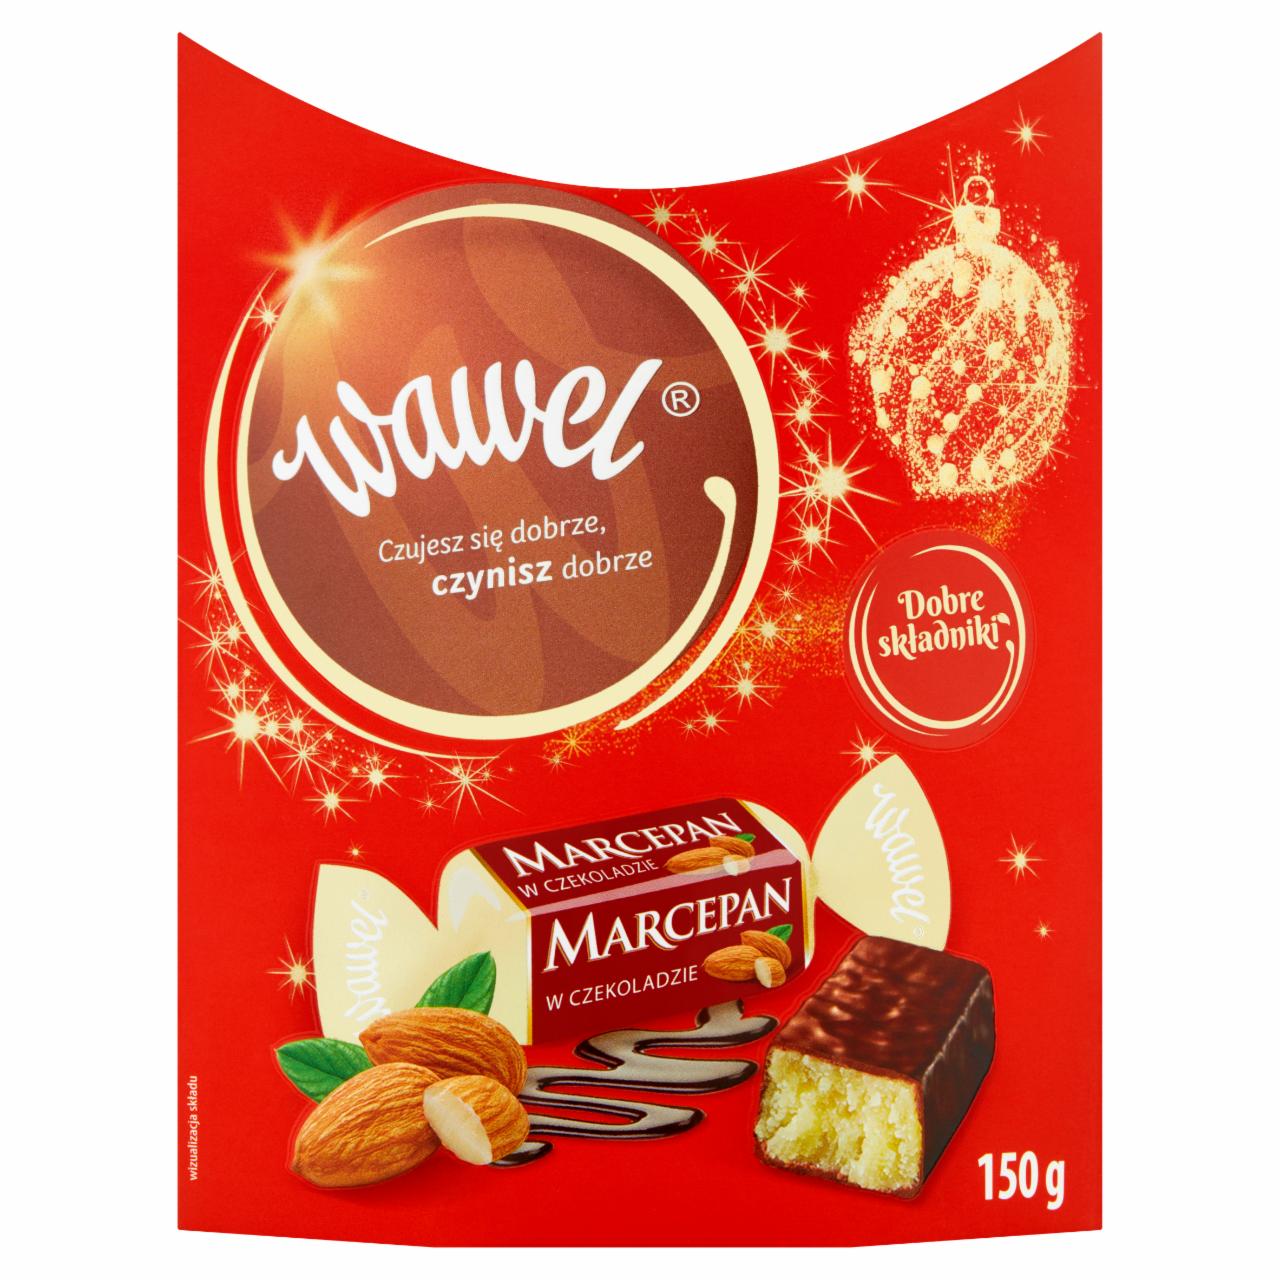 Zdjęcia - Wawel Marcepan w czekoladzie Cukierki 150 g